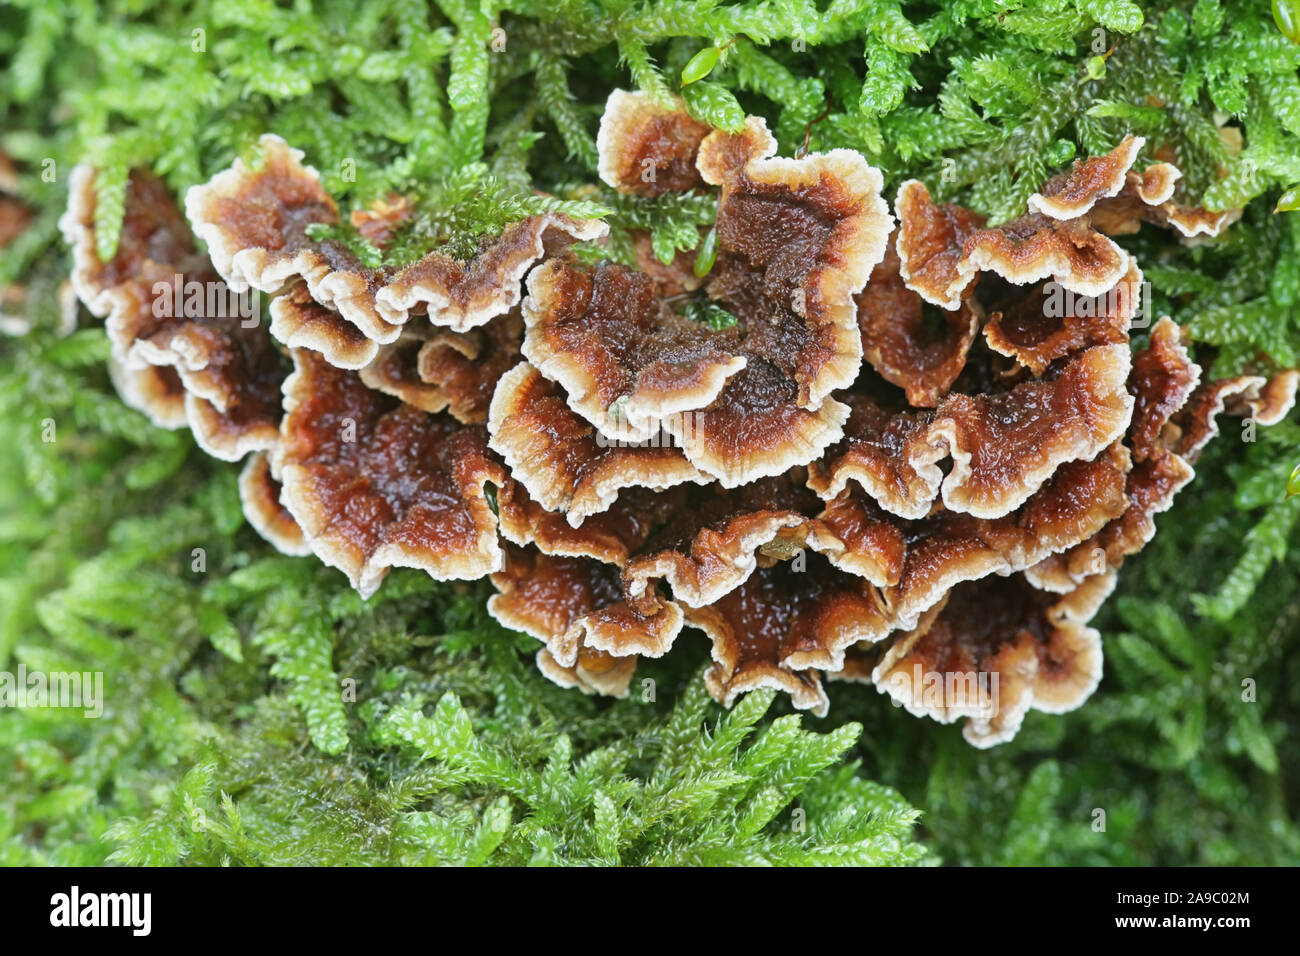 Stereum gausapatum, connu sous le nom de chêne de saignement, croûte de champignons sauvages de Finlande Banque D'Images